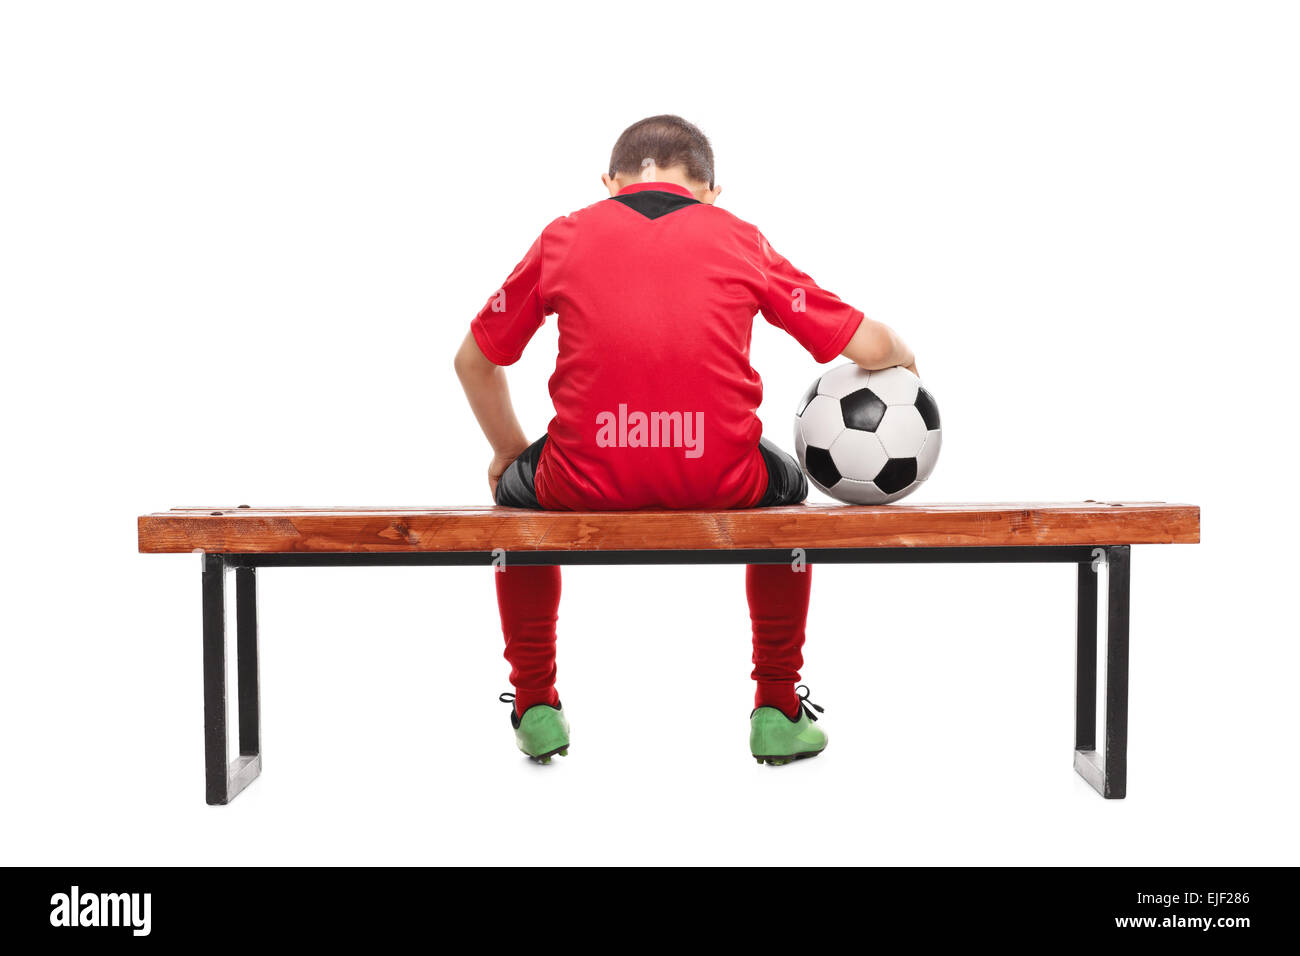 Vista posteriore studio shot di un triste little boy in rosso Soccer jersey seduto su una panchina e tenendo una palla isolati su sfondo bianco Foto Stock